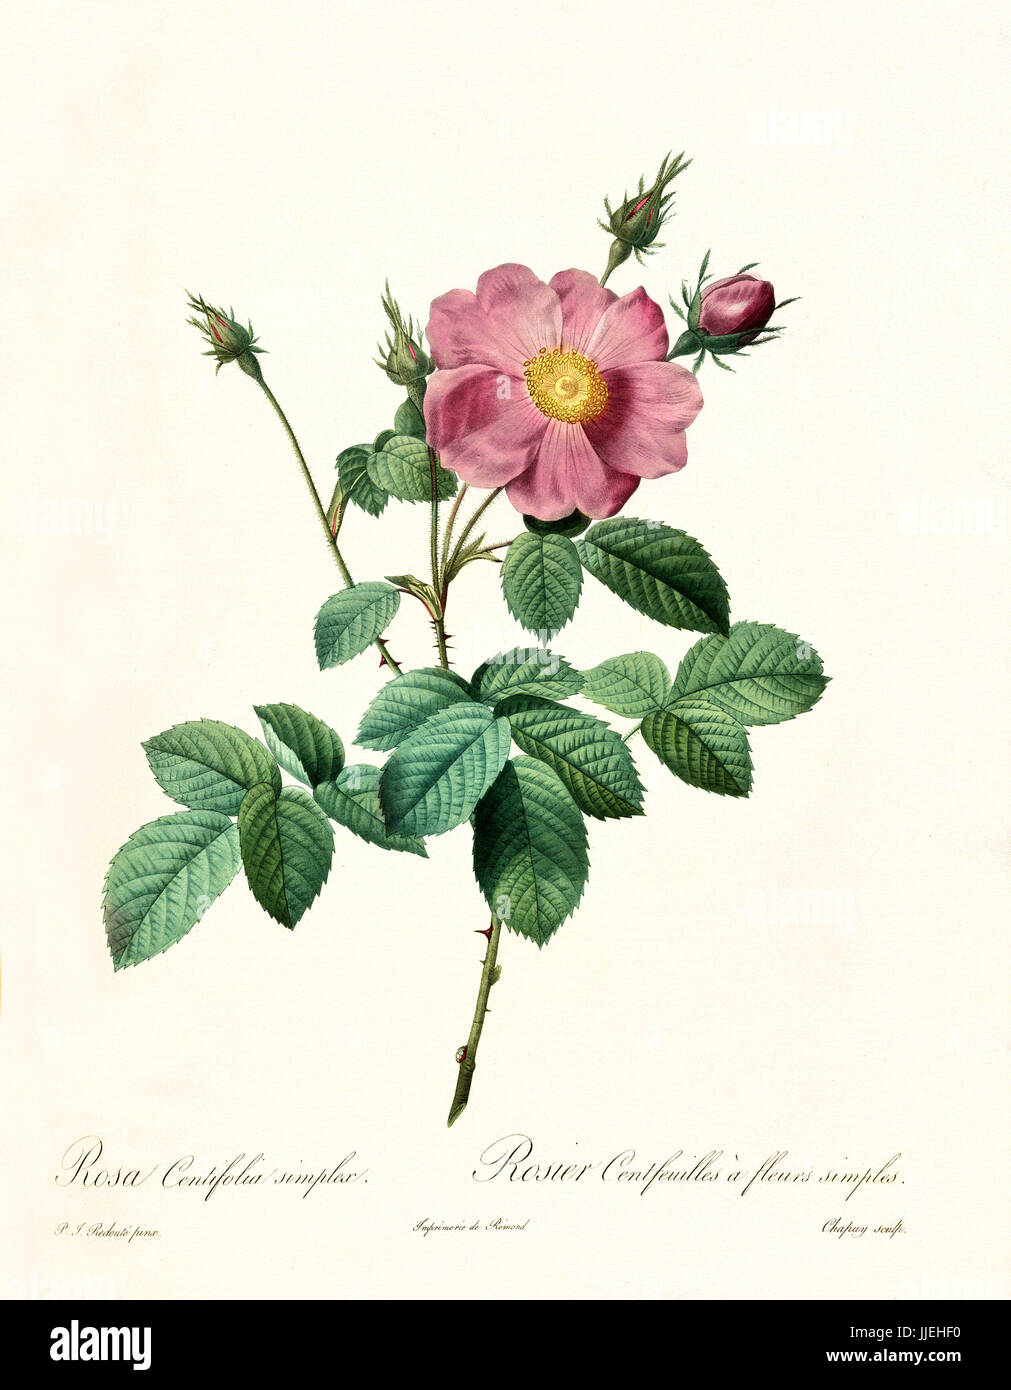 Vecchia illustrazione di rosa centifolia simplex. Creato da P. R. Redoute, pubblicato su Les Roses, Imp. Firmin Didot, Parigi, 1817-24 Foto Stock